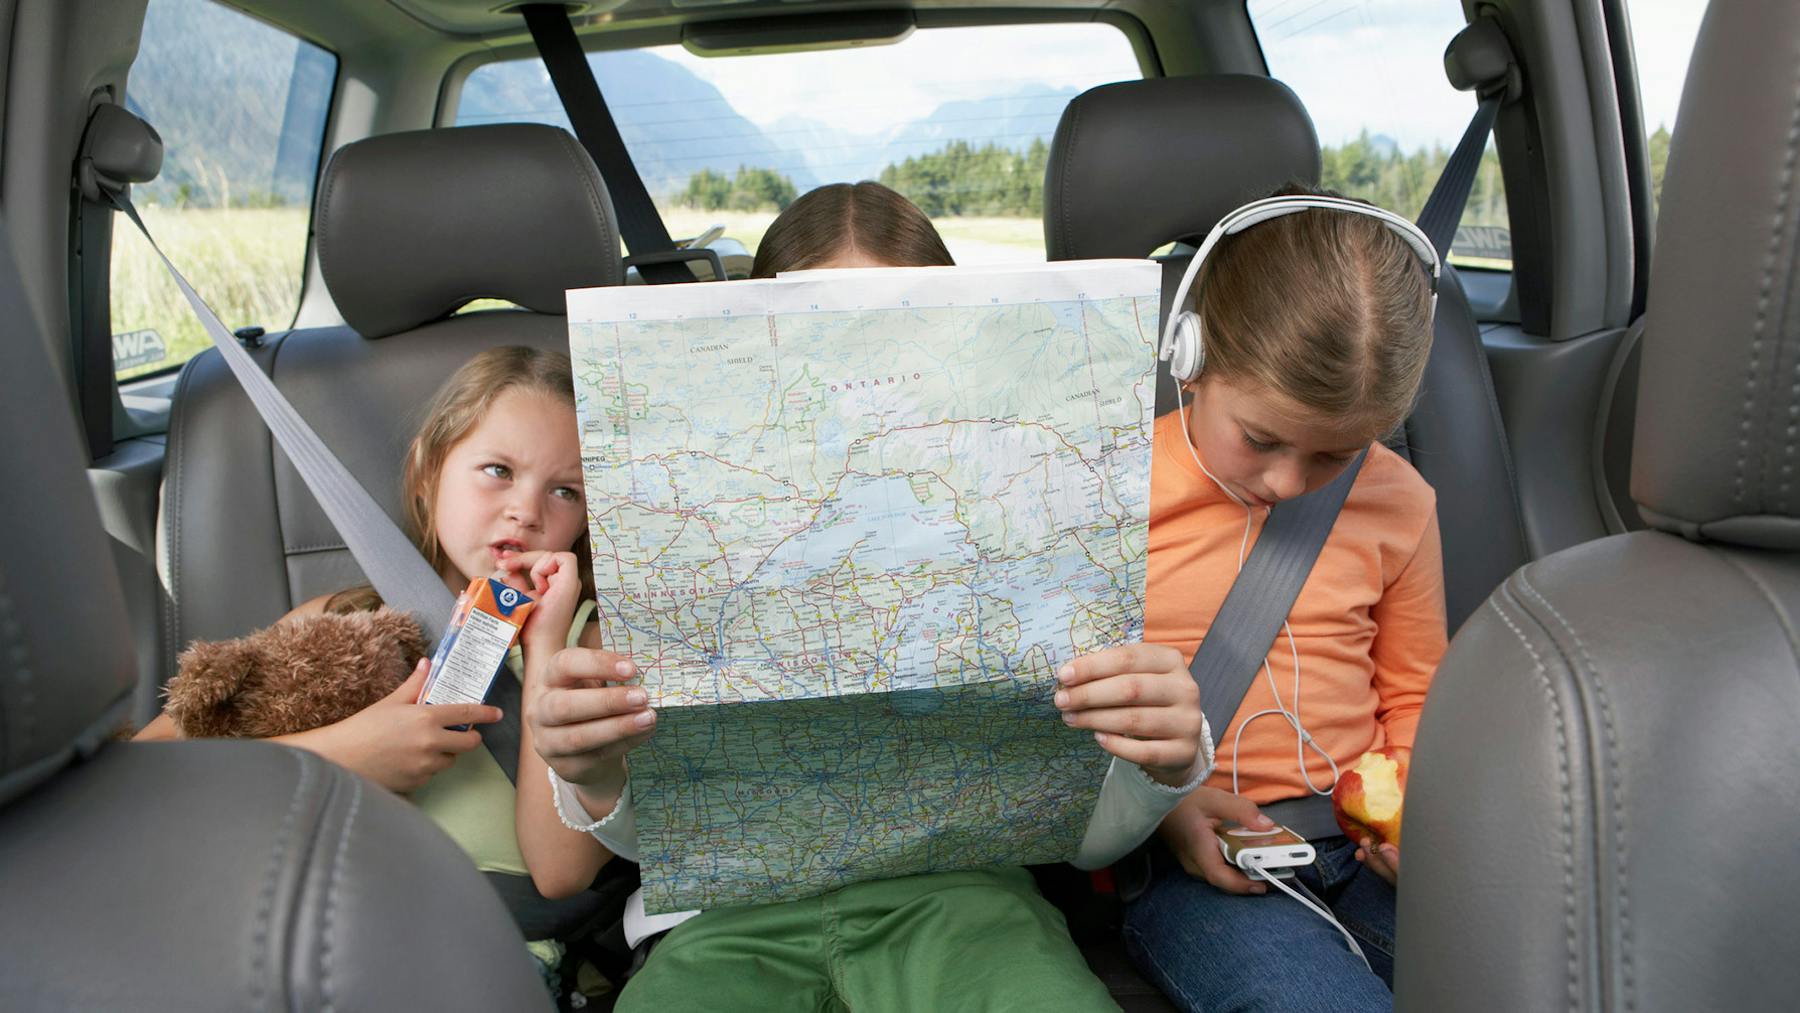 Kids Road Trip Travel Essentials They'll Love - PeanutPop